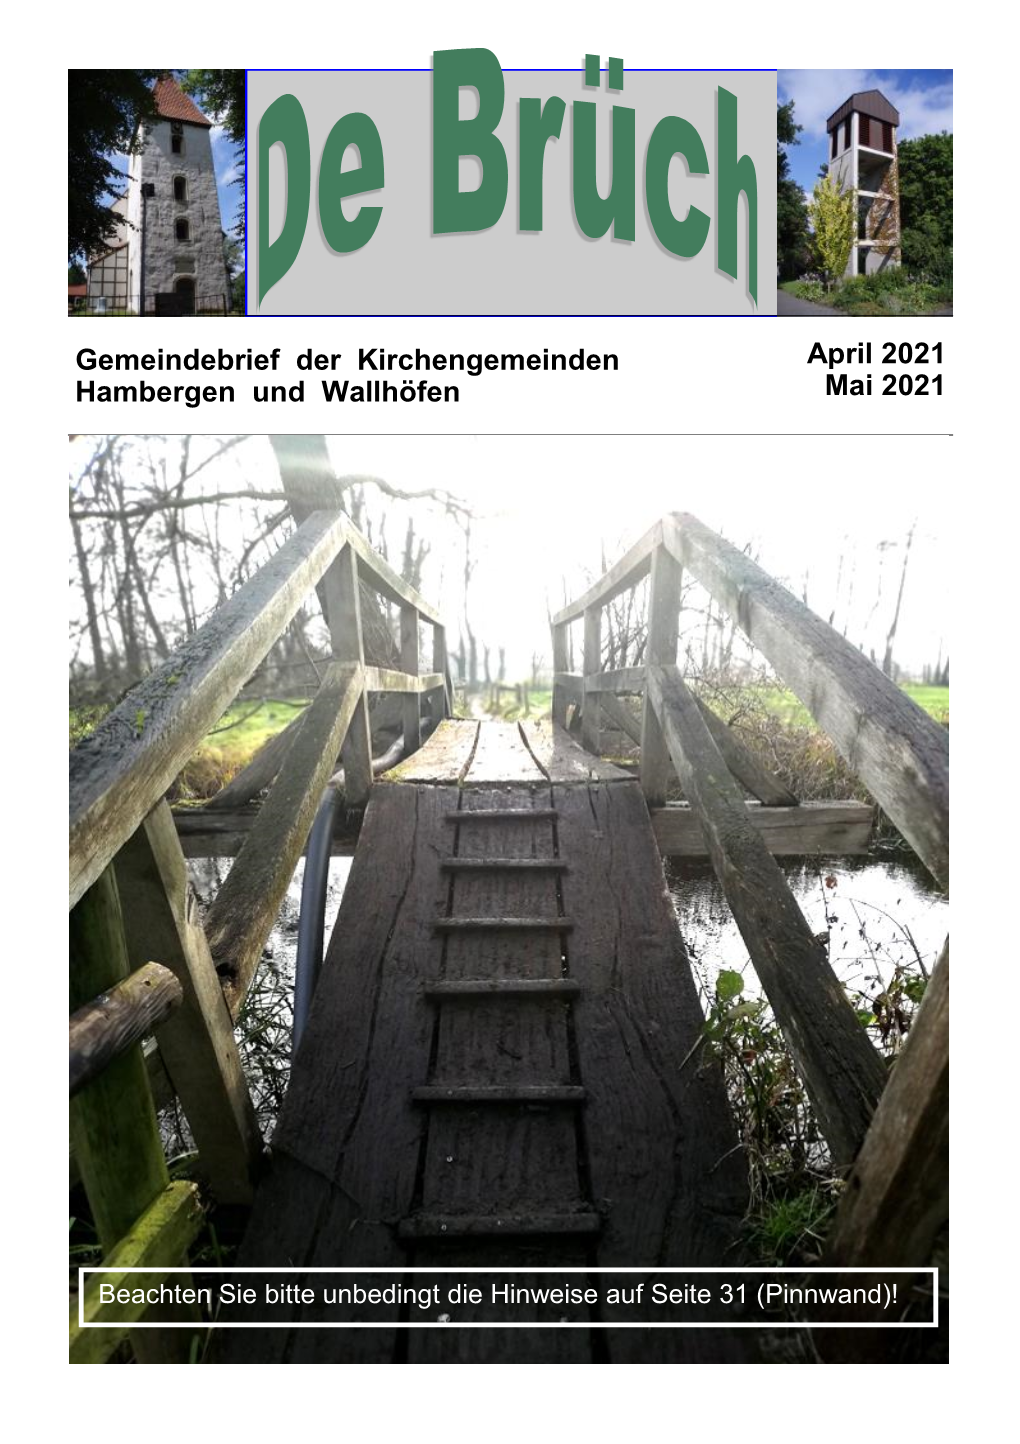 Gemeindebrief Der Kirchengemeinden April 2021 Hambergen Und Wallhöfen Mai 2021